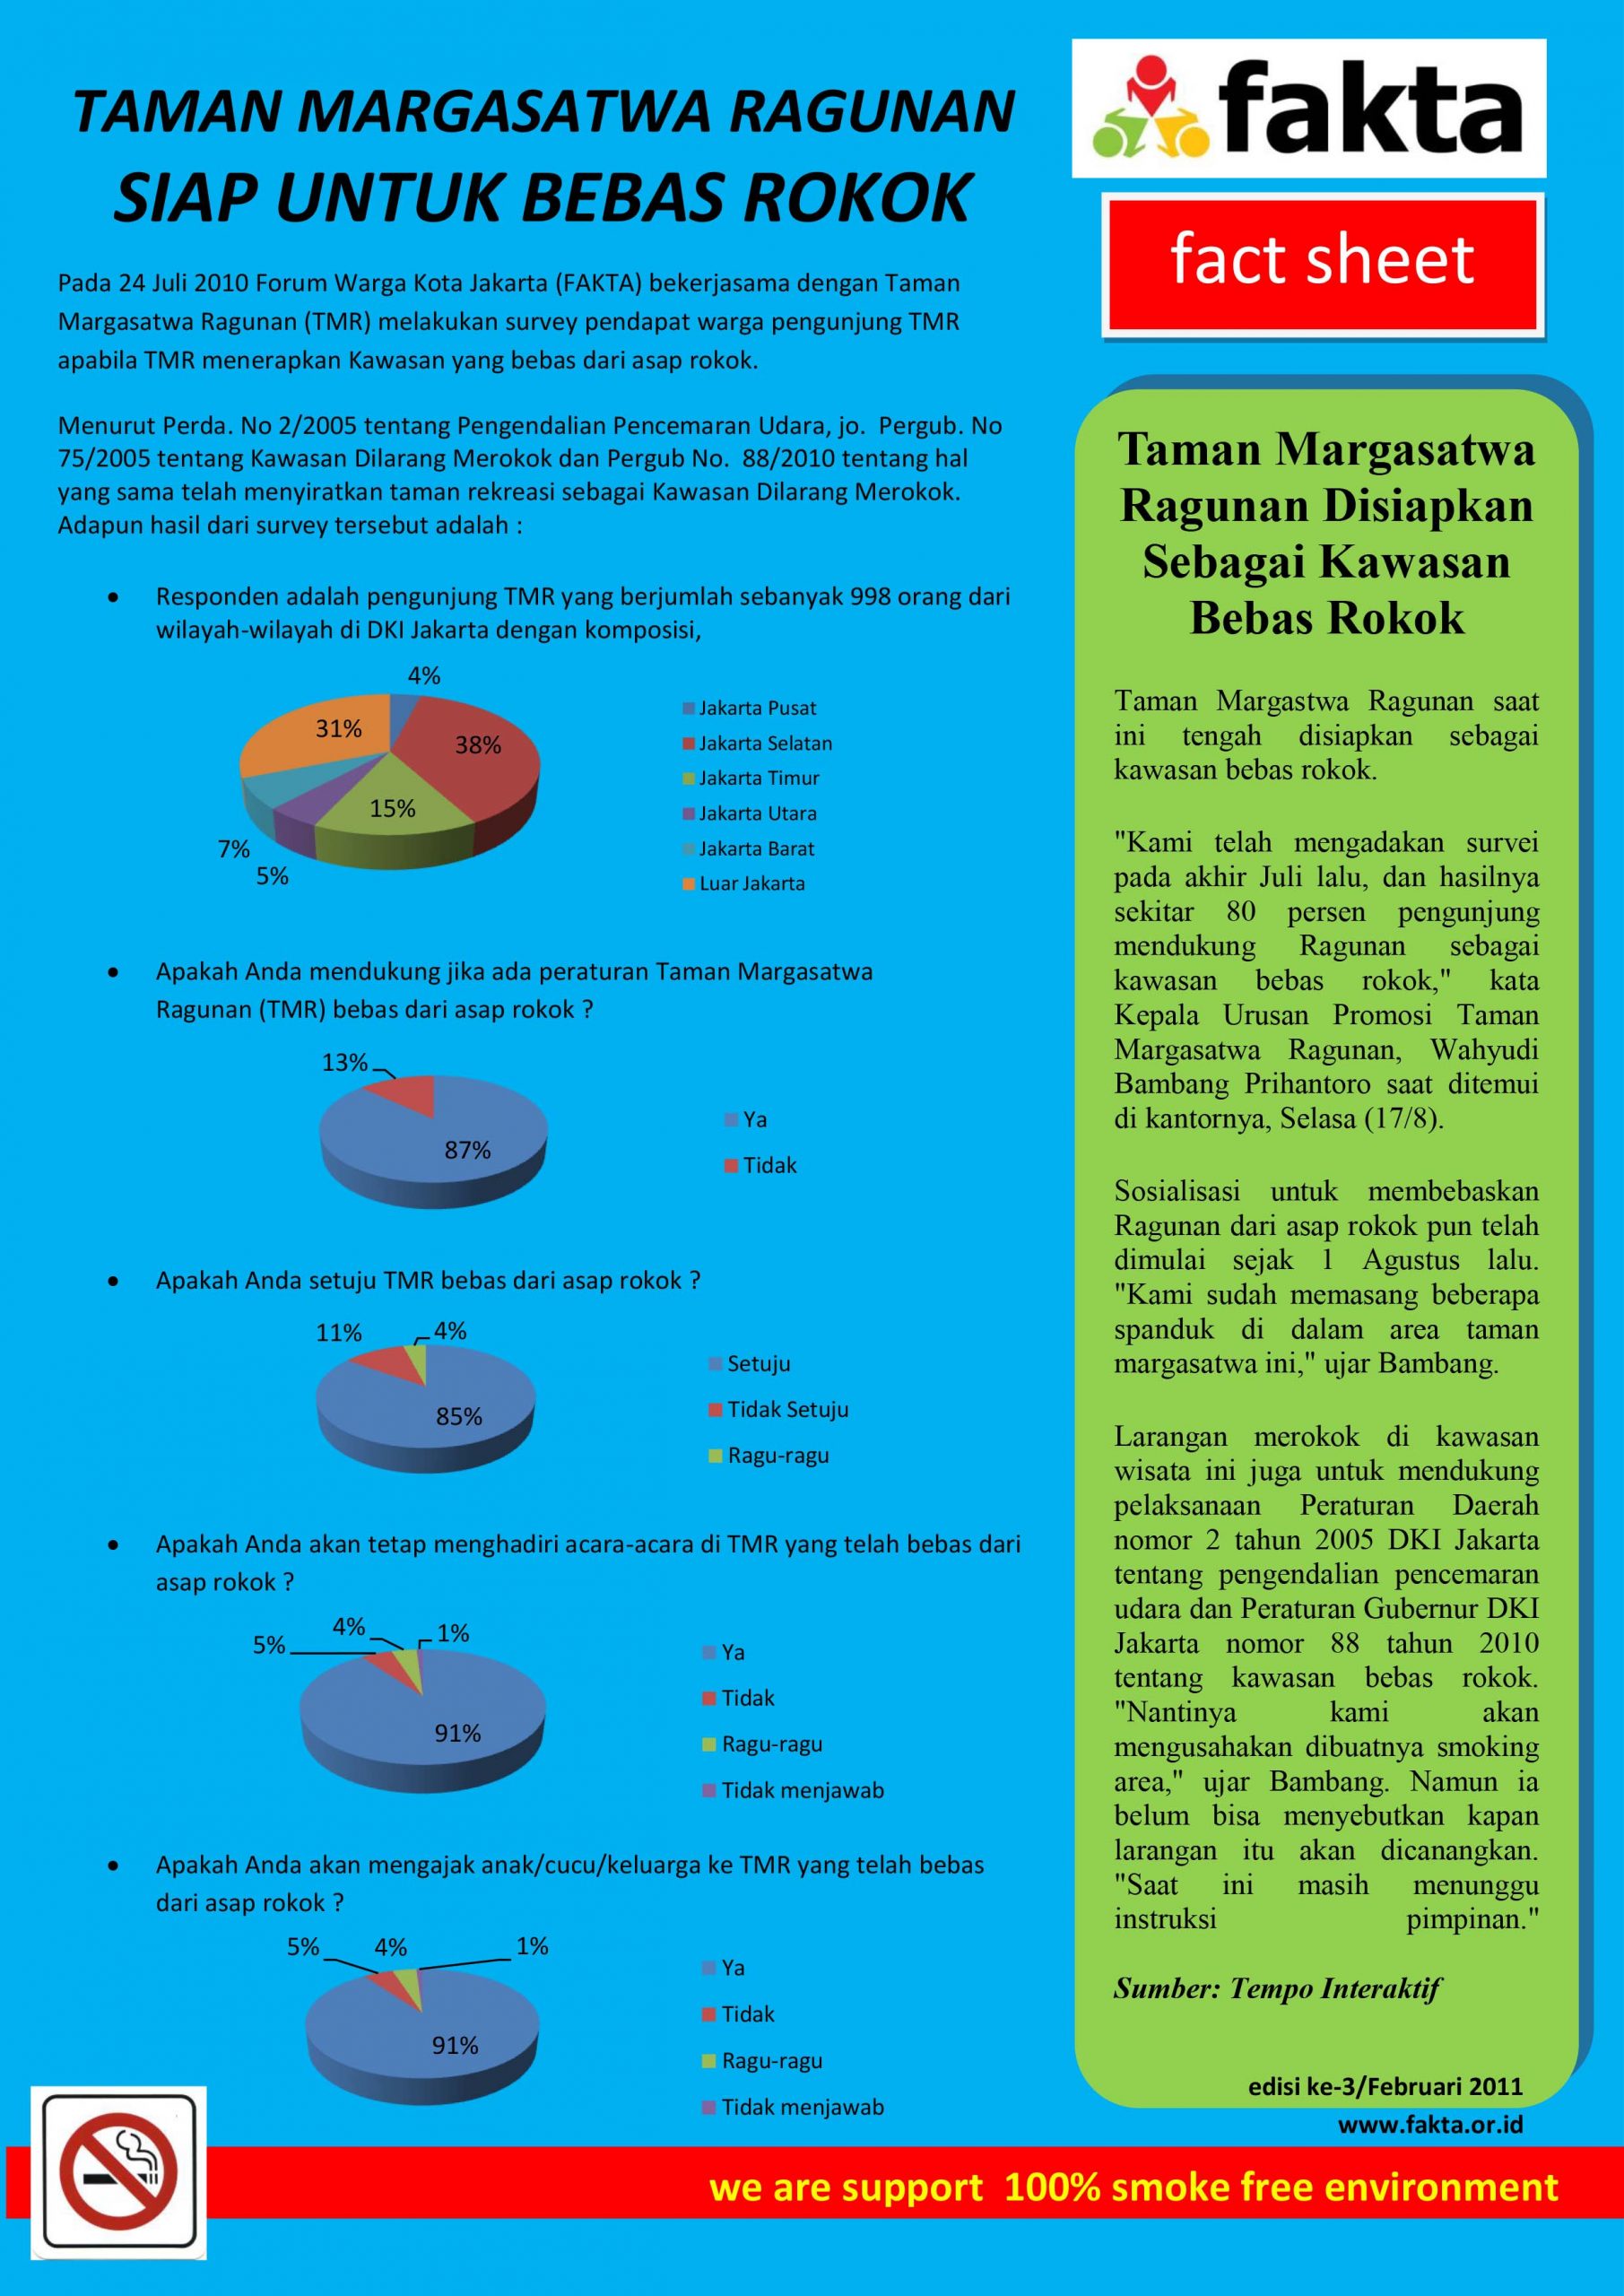 Factsheet Hasil Surevei Taman Margasatwa Ragunan (KTR)